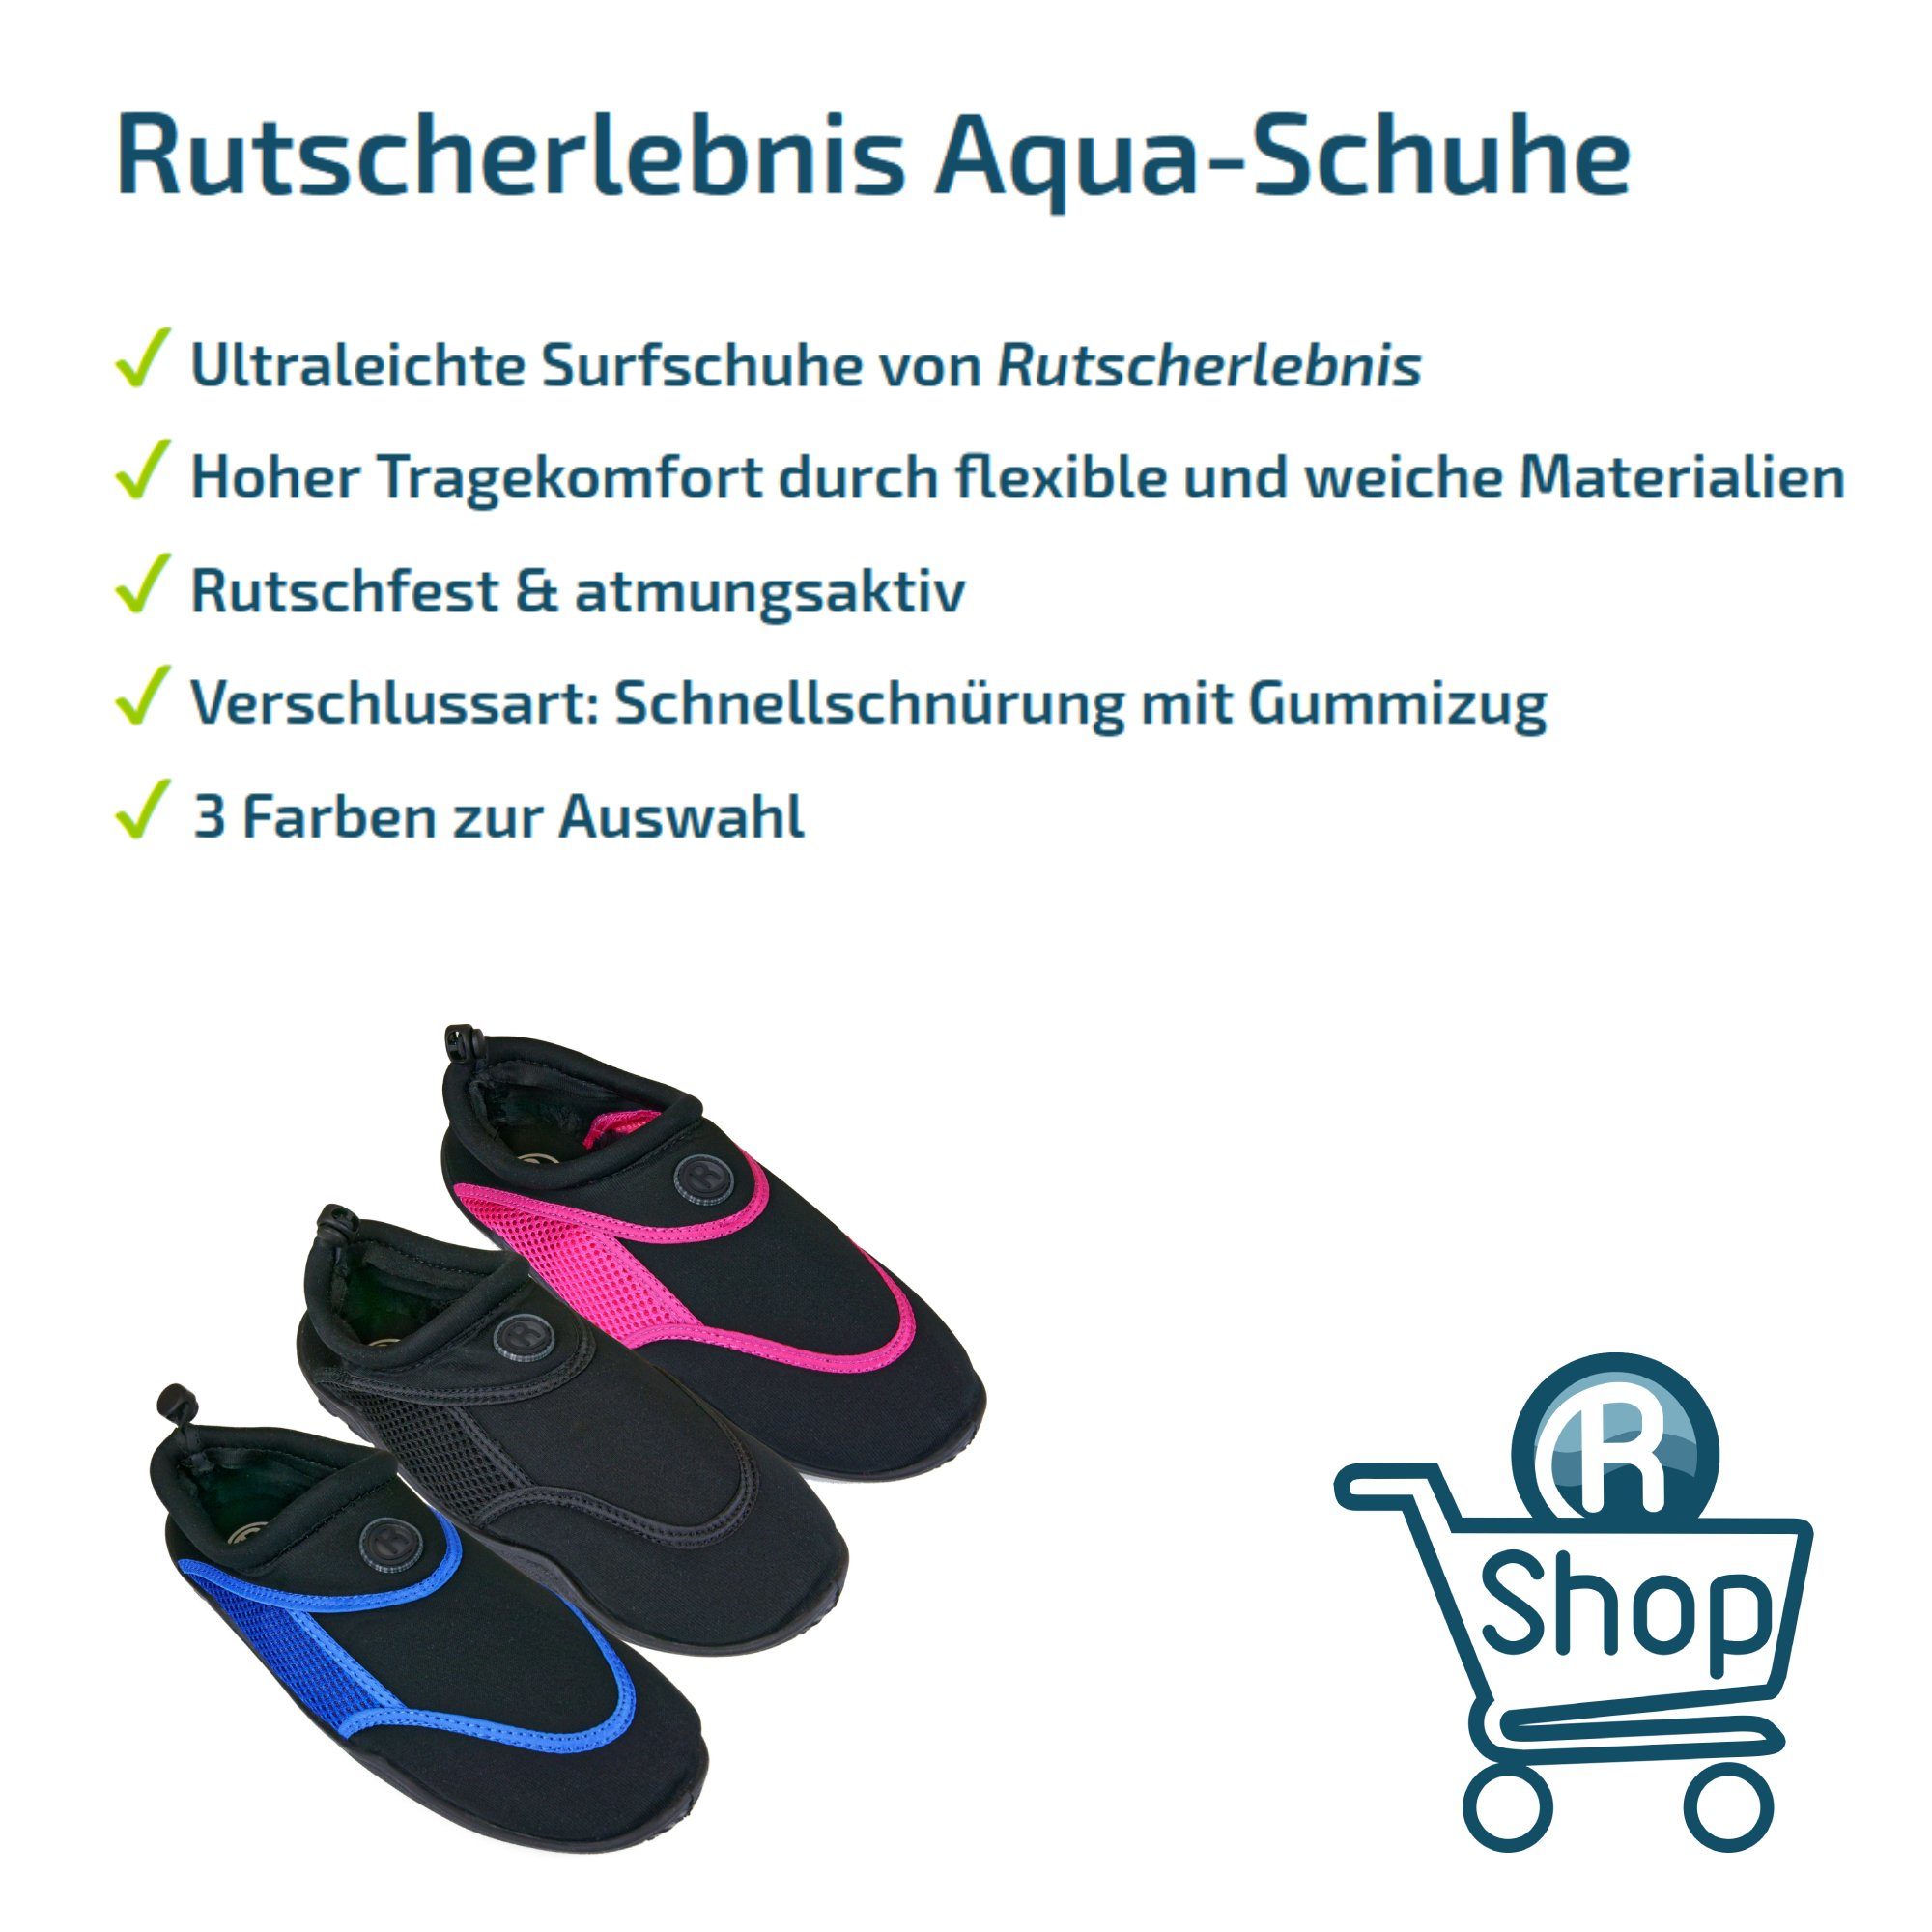 Badeschuh Blue/Black Surf-Schuhe / Aqua-Schuhe Rutscherlebnis